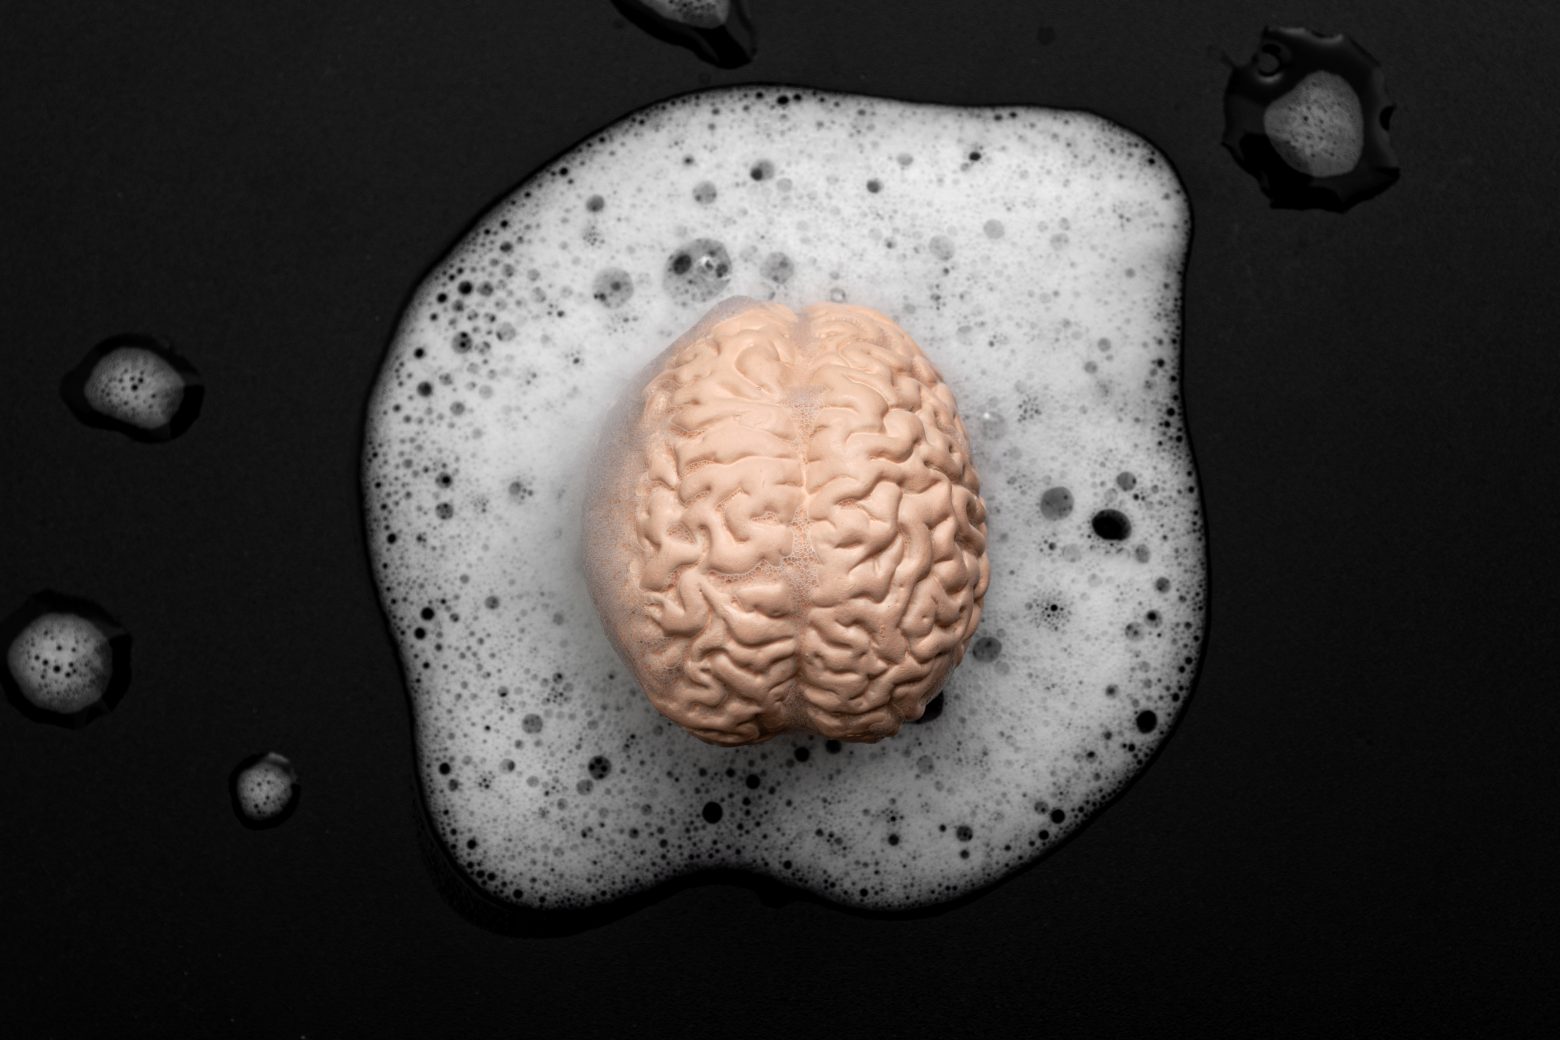 Vymývání mozků, nižší kritické myšlení a koncept kontroly mysli s vymýváním lidského mozku v mýdlových bublinách izolovaných na černém pozadí